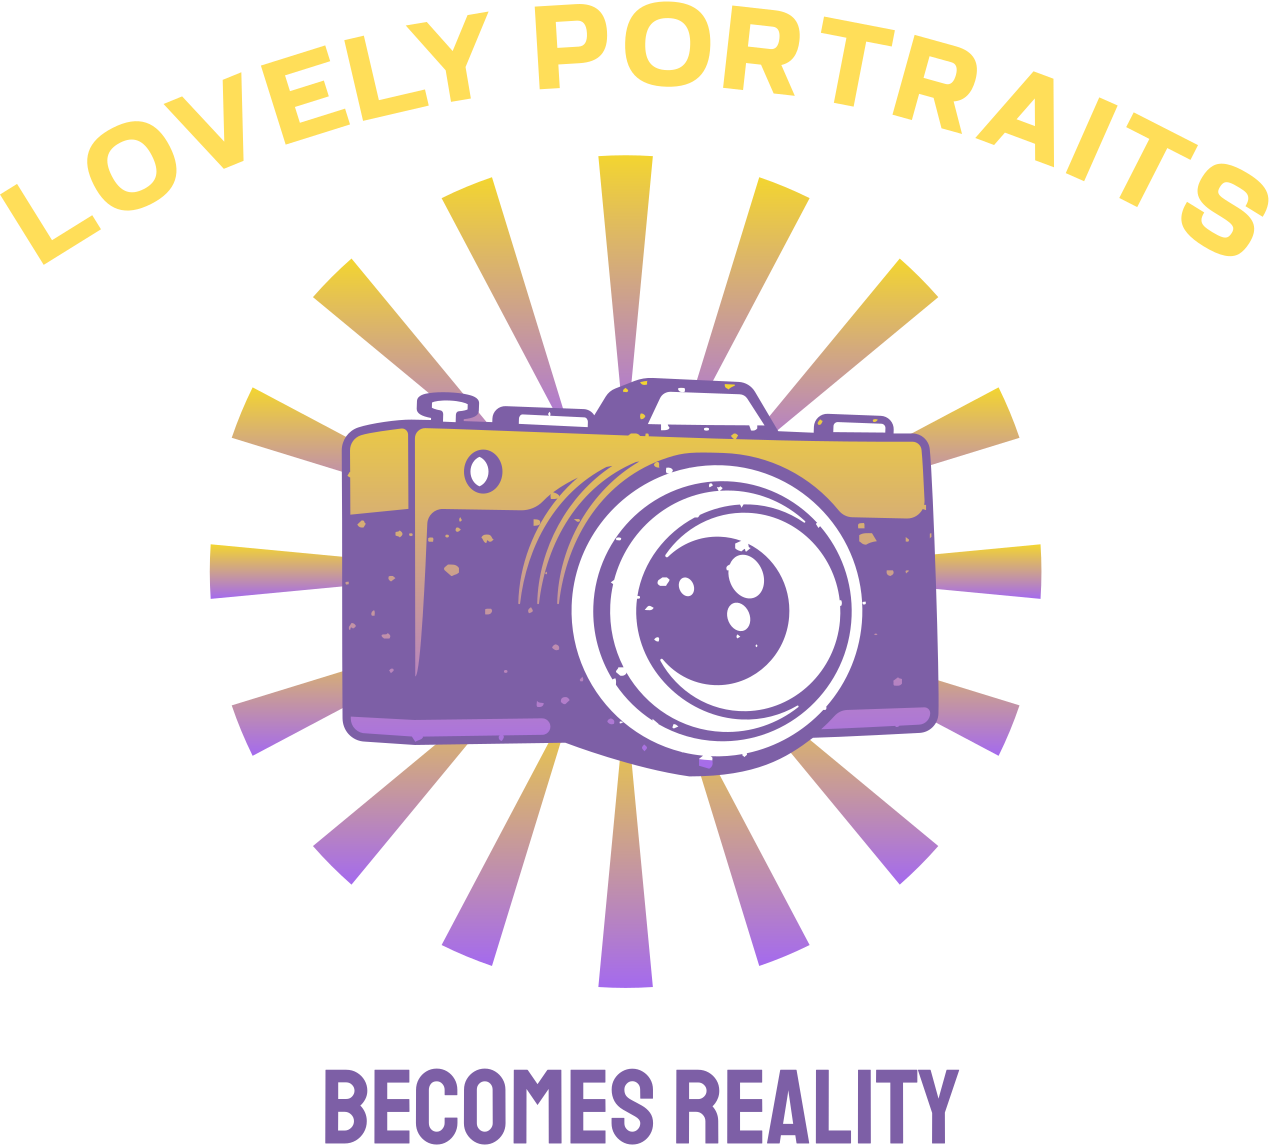 Lovely Portraits's logo